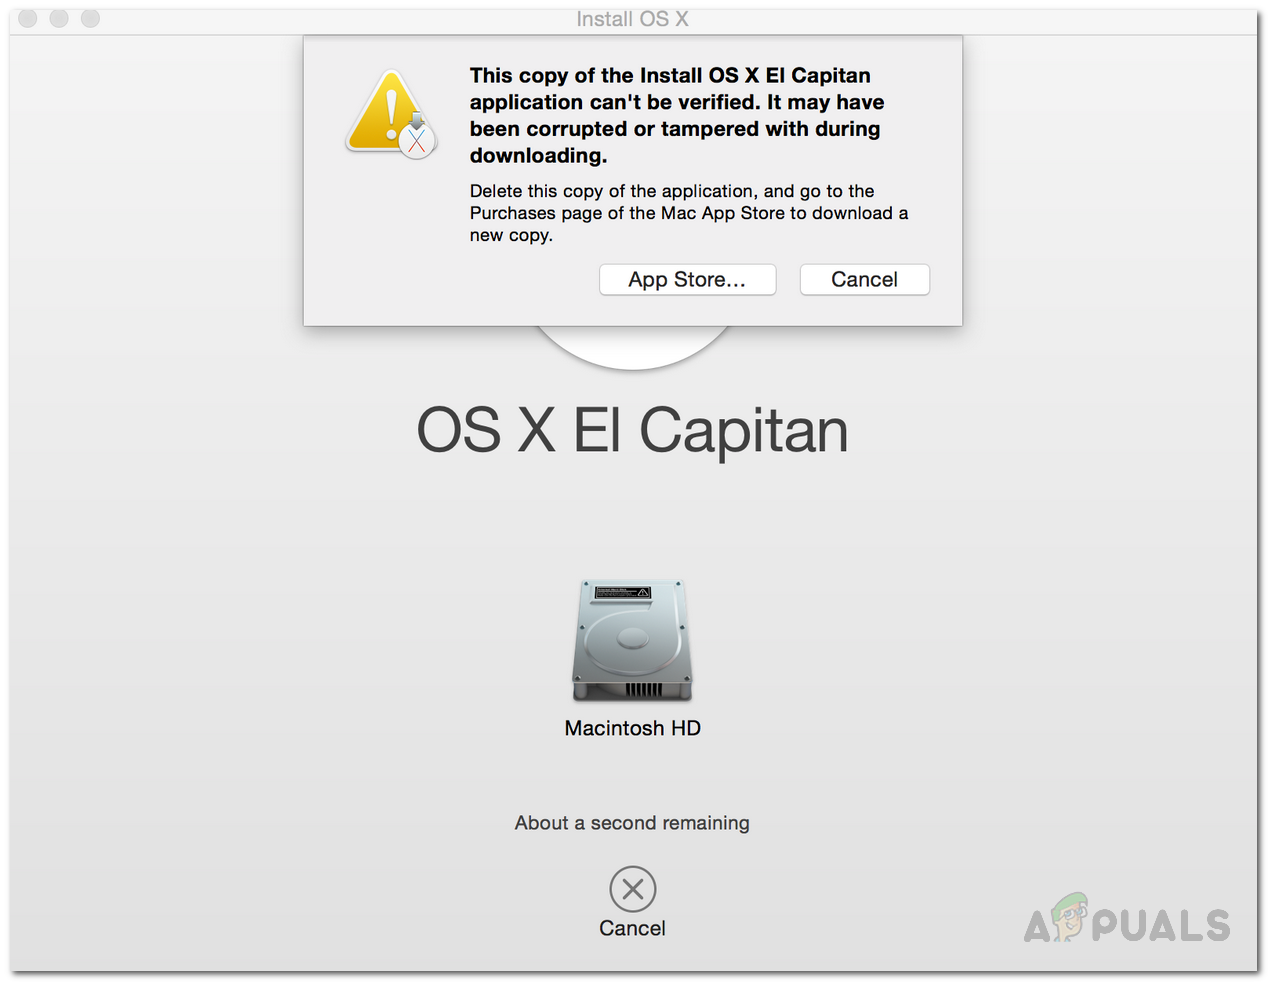 [పరిష్కరించండి] ఇన్‌స్టాల్ OS X ఎల్ కాపిటన్ అప్లికేషన్ యొక్క ఈ కాపీని ధృవీకరించలేము